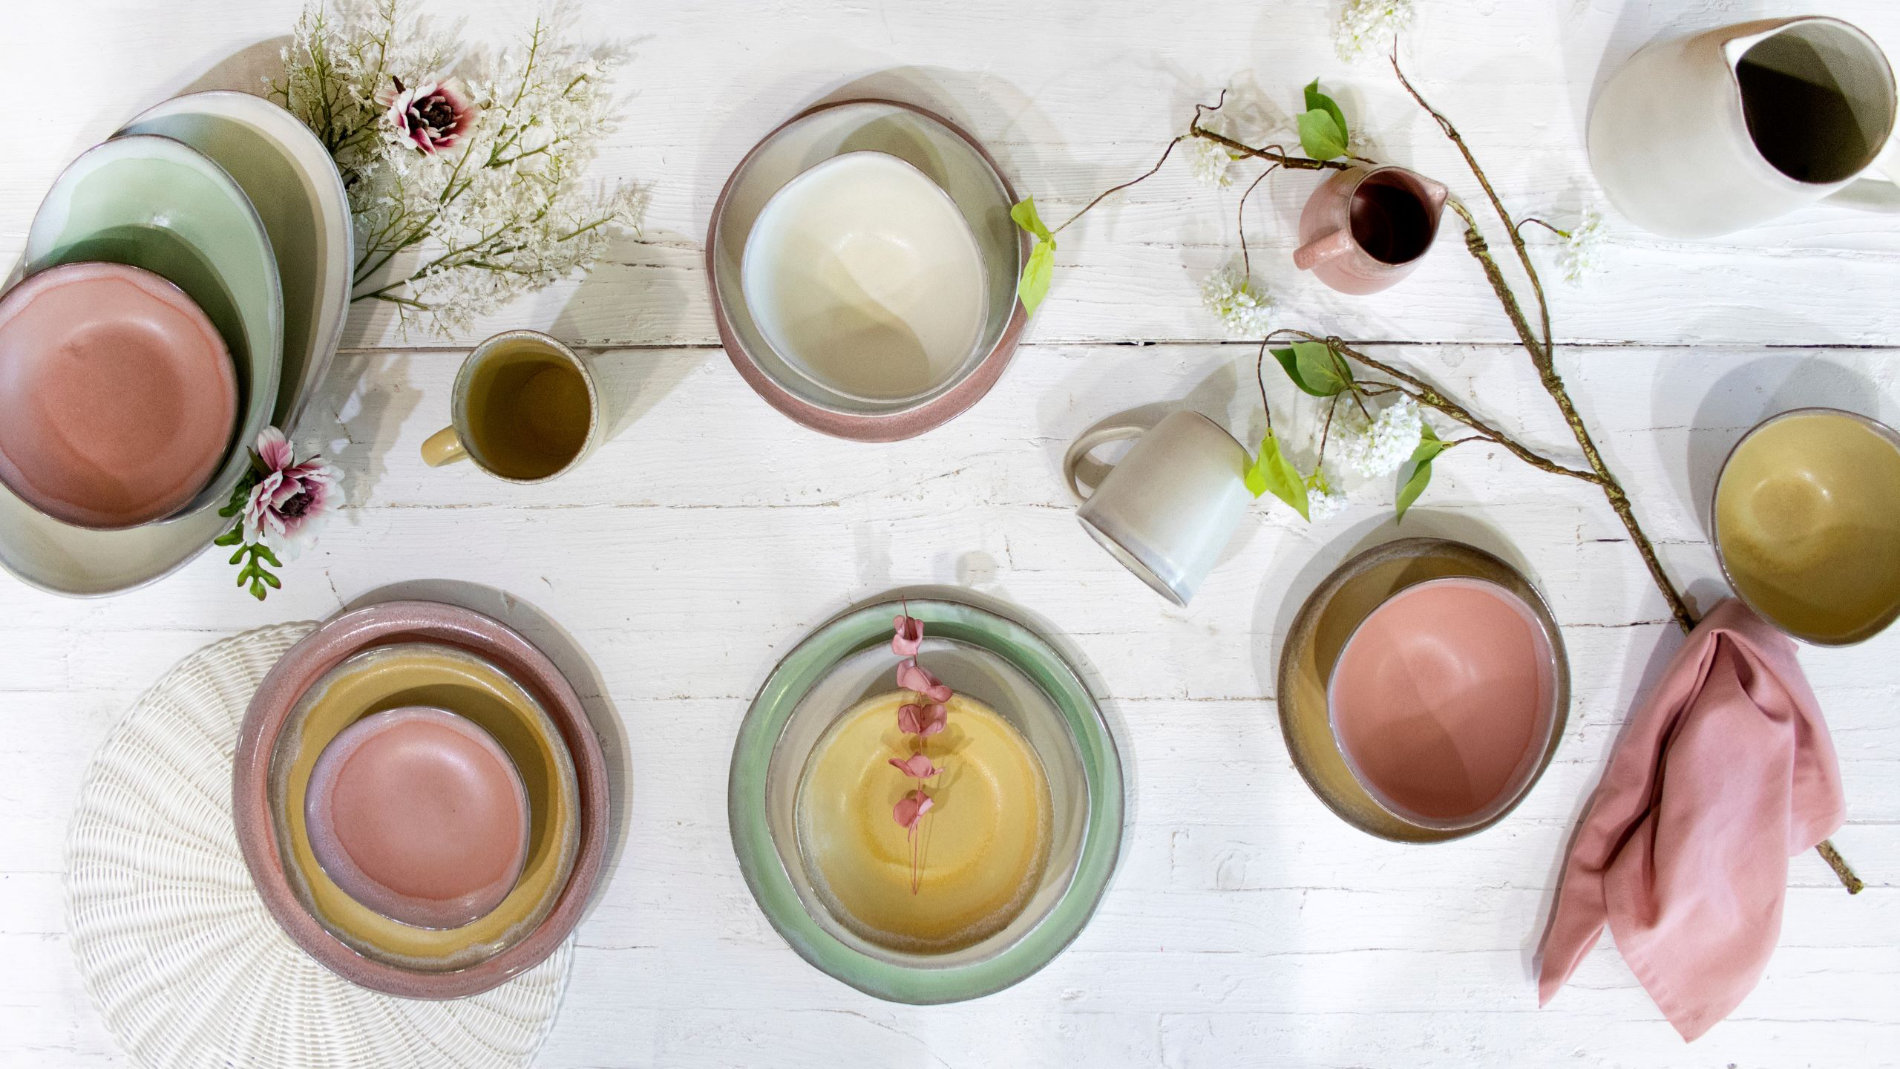 Geschirr und Keramik auf einem Tisch